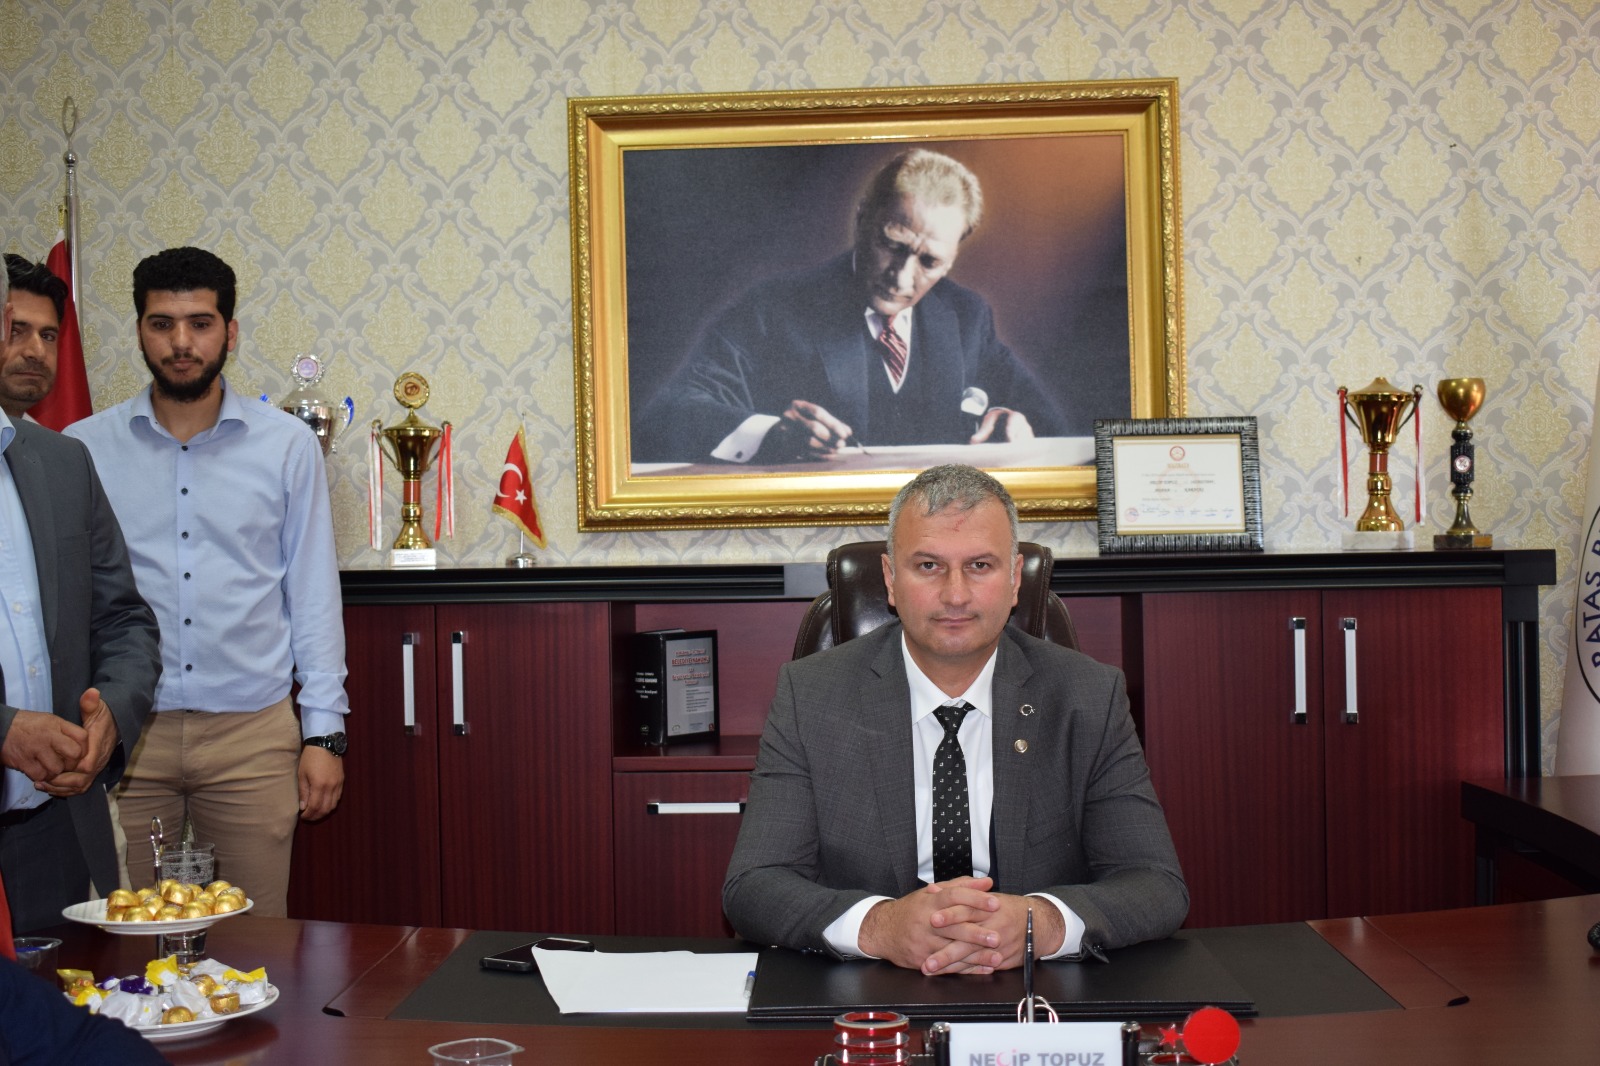 Karataş Belediye Başkanı Necip Topuz Yeni yıl dolayısı ile bir mesaj yayımladı. 